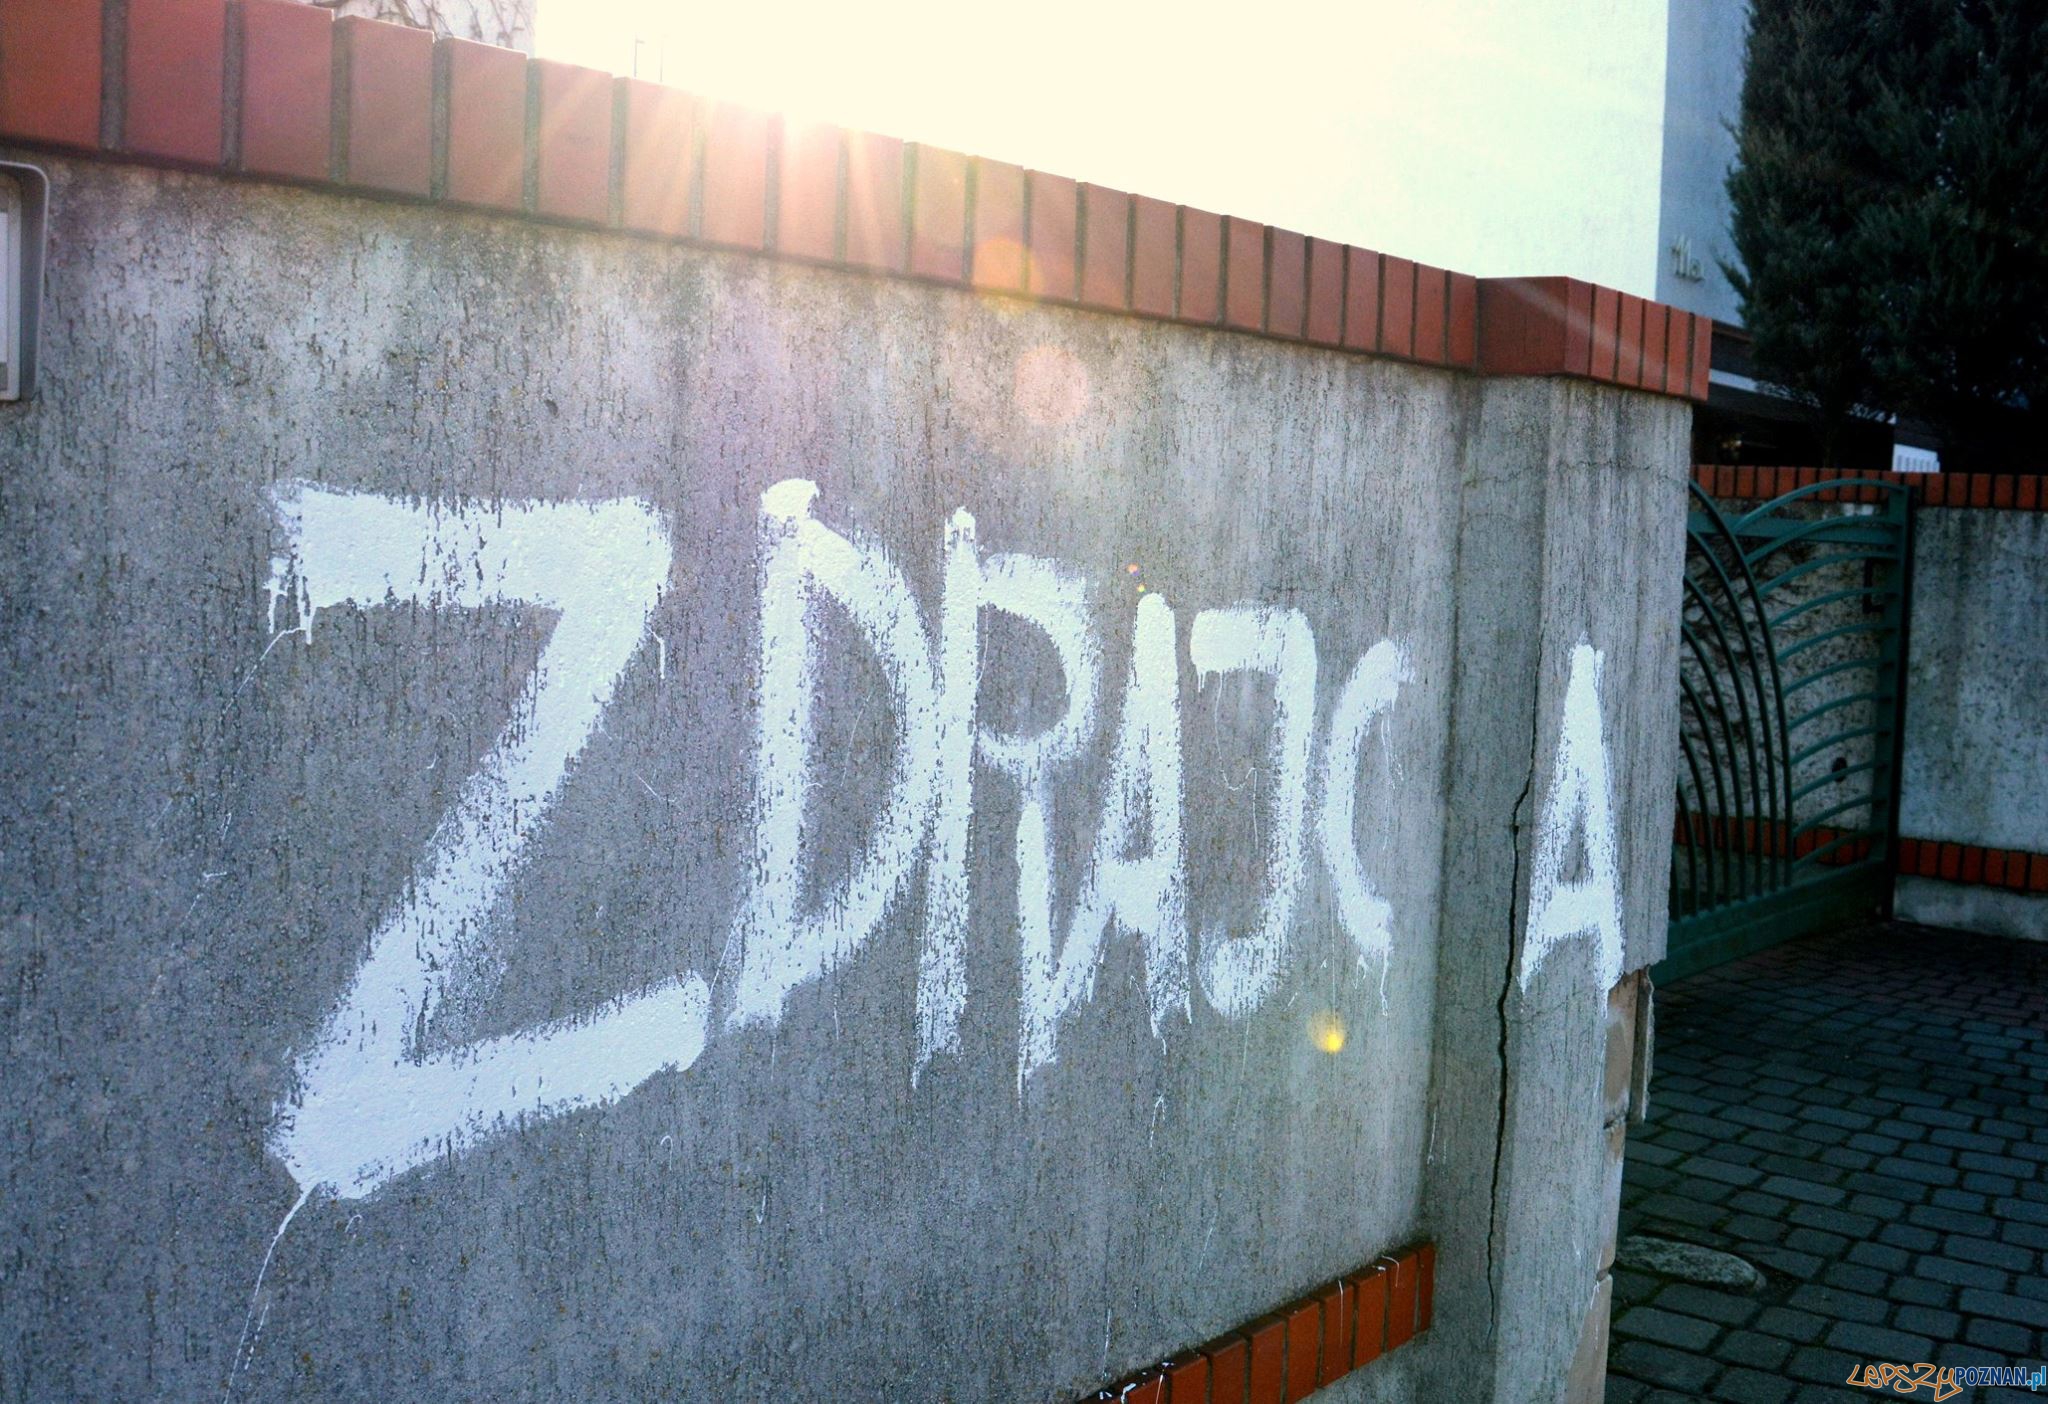 ZDRAJCA! - hasłem w Prezydenta Poznania  Foto: Jacek Jaśkowiak